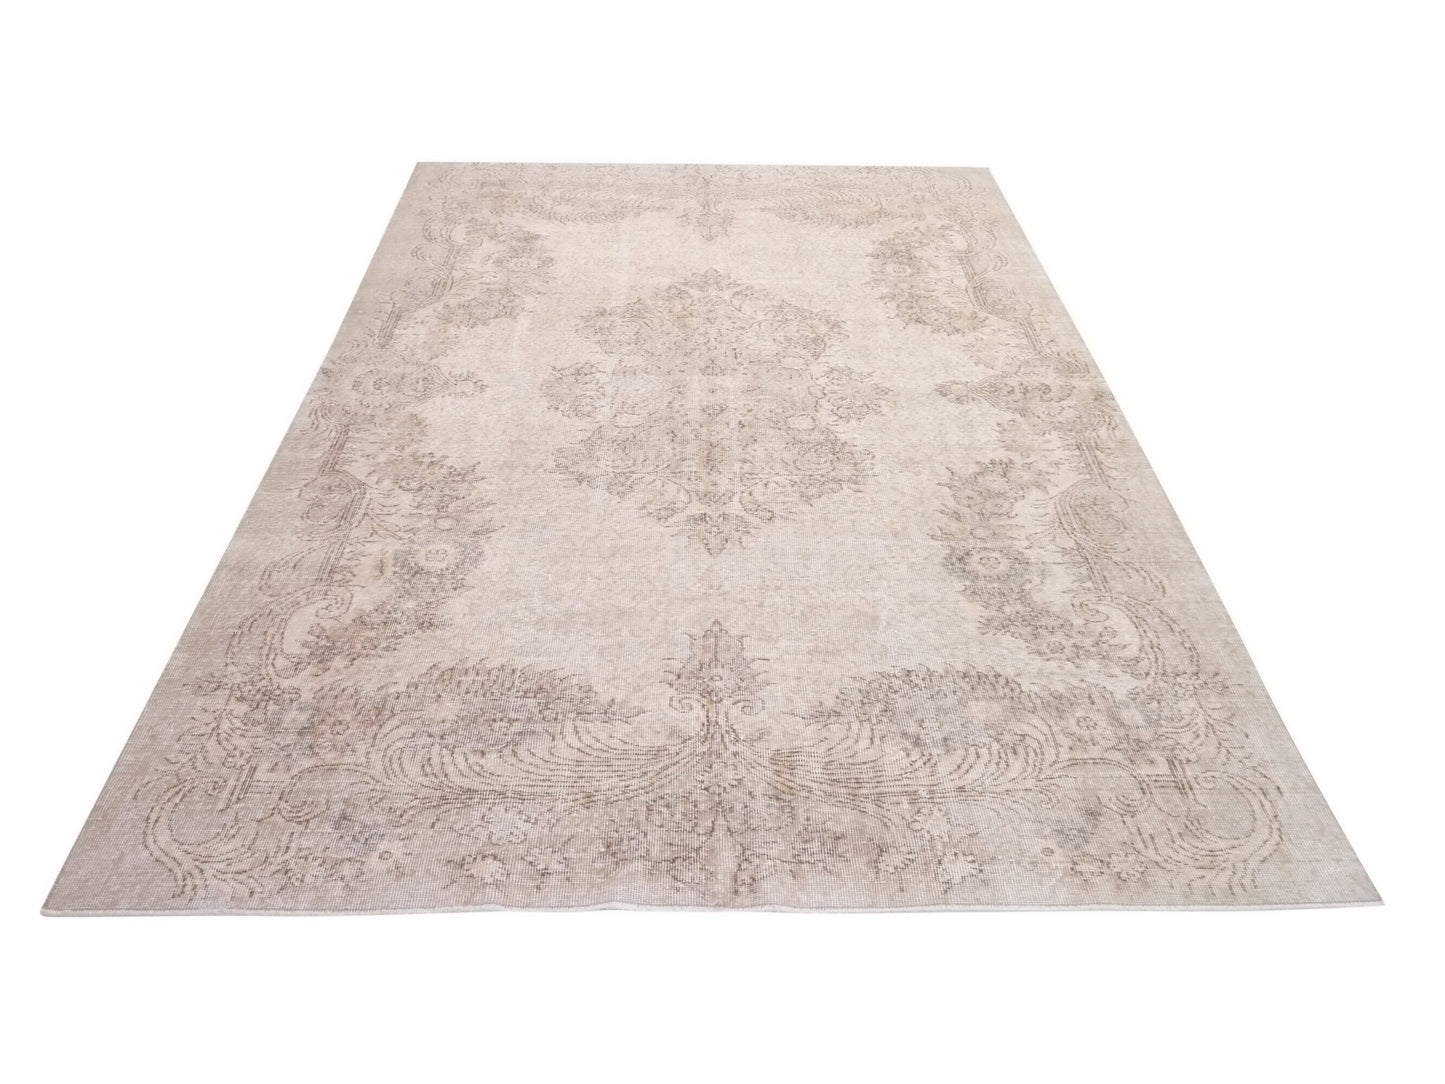 Oushak Rug, Turkish rug, Vintage Rug, 7x10 Rug, Floral rug, Beige, Brown, Natural rug, Home Rug, Decorative rug, Turkey rug, Handmade, 10338